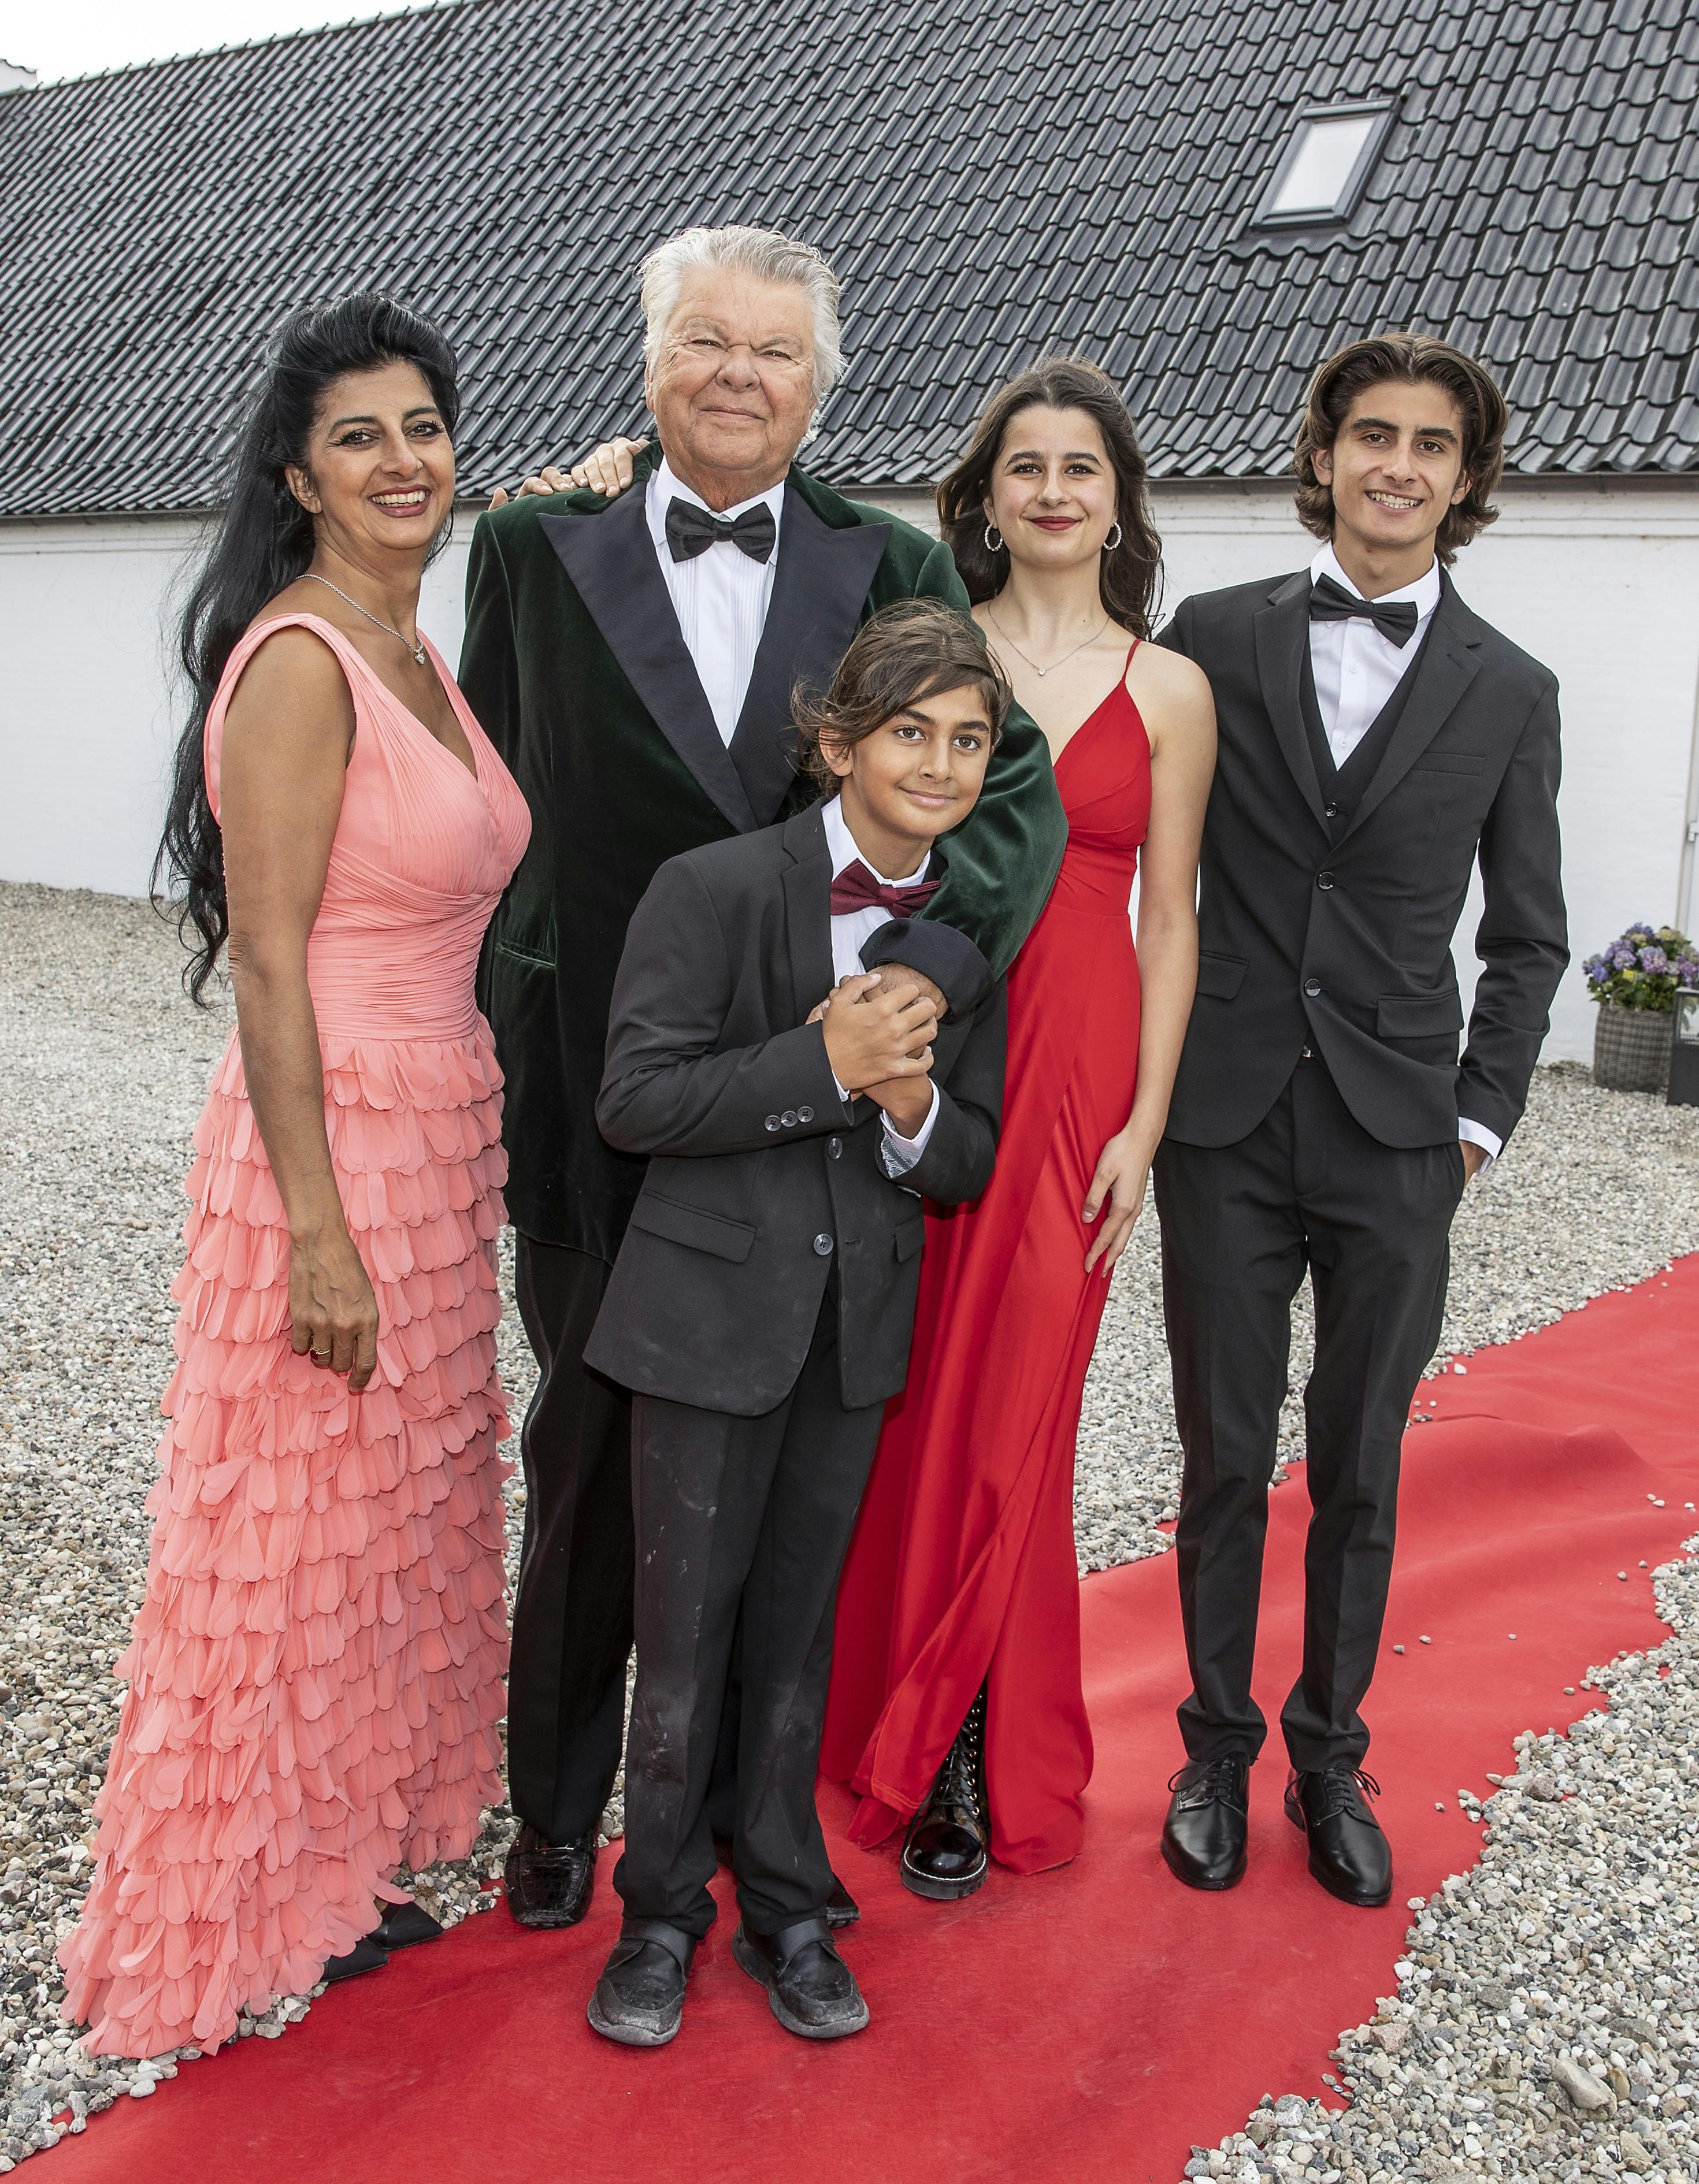 Christian Kjær og Susan Astani ses her med deres fælles søn, Alexander, mellem sig. Til højre ses to af Susan Astanis børn fra et tidligere forhold, Leon og Stella.
